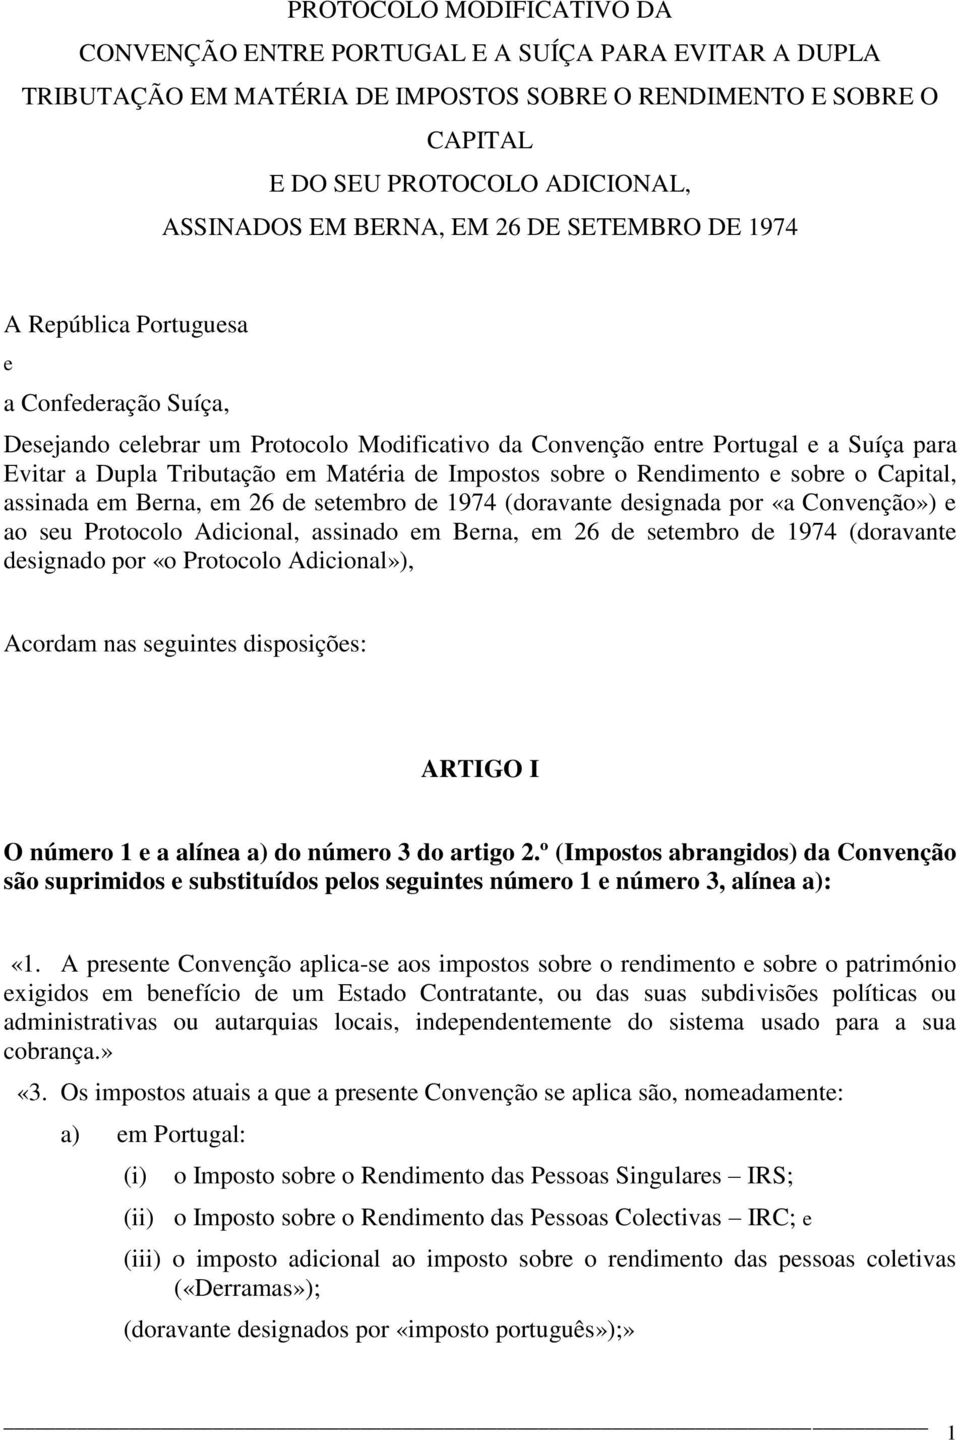 Matéria de Impostos sobre o Rendimento e sobre o Capital, assinada em Berna, em 26 de setembro de 1974 (doravante designada por «a Convenção») e ao seu Protocolo Adicional, assinado em Berna, em 26